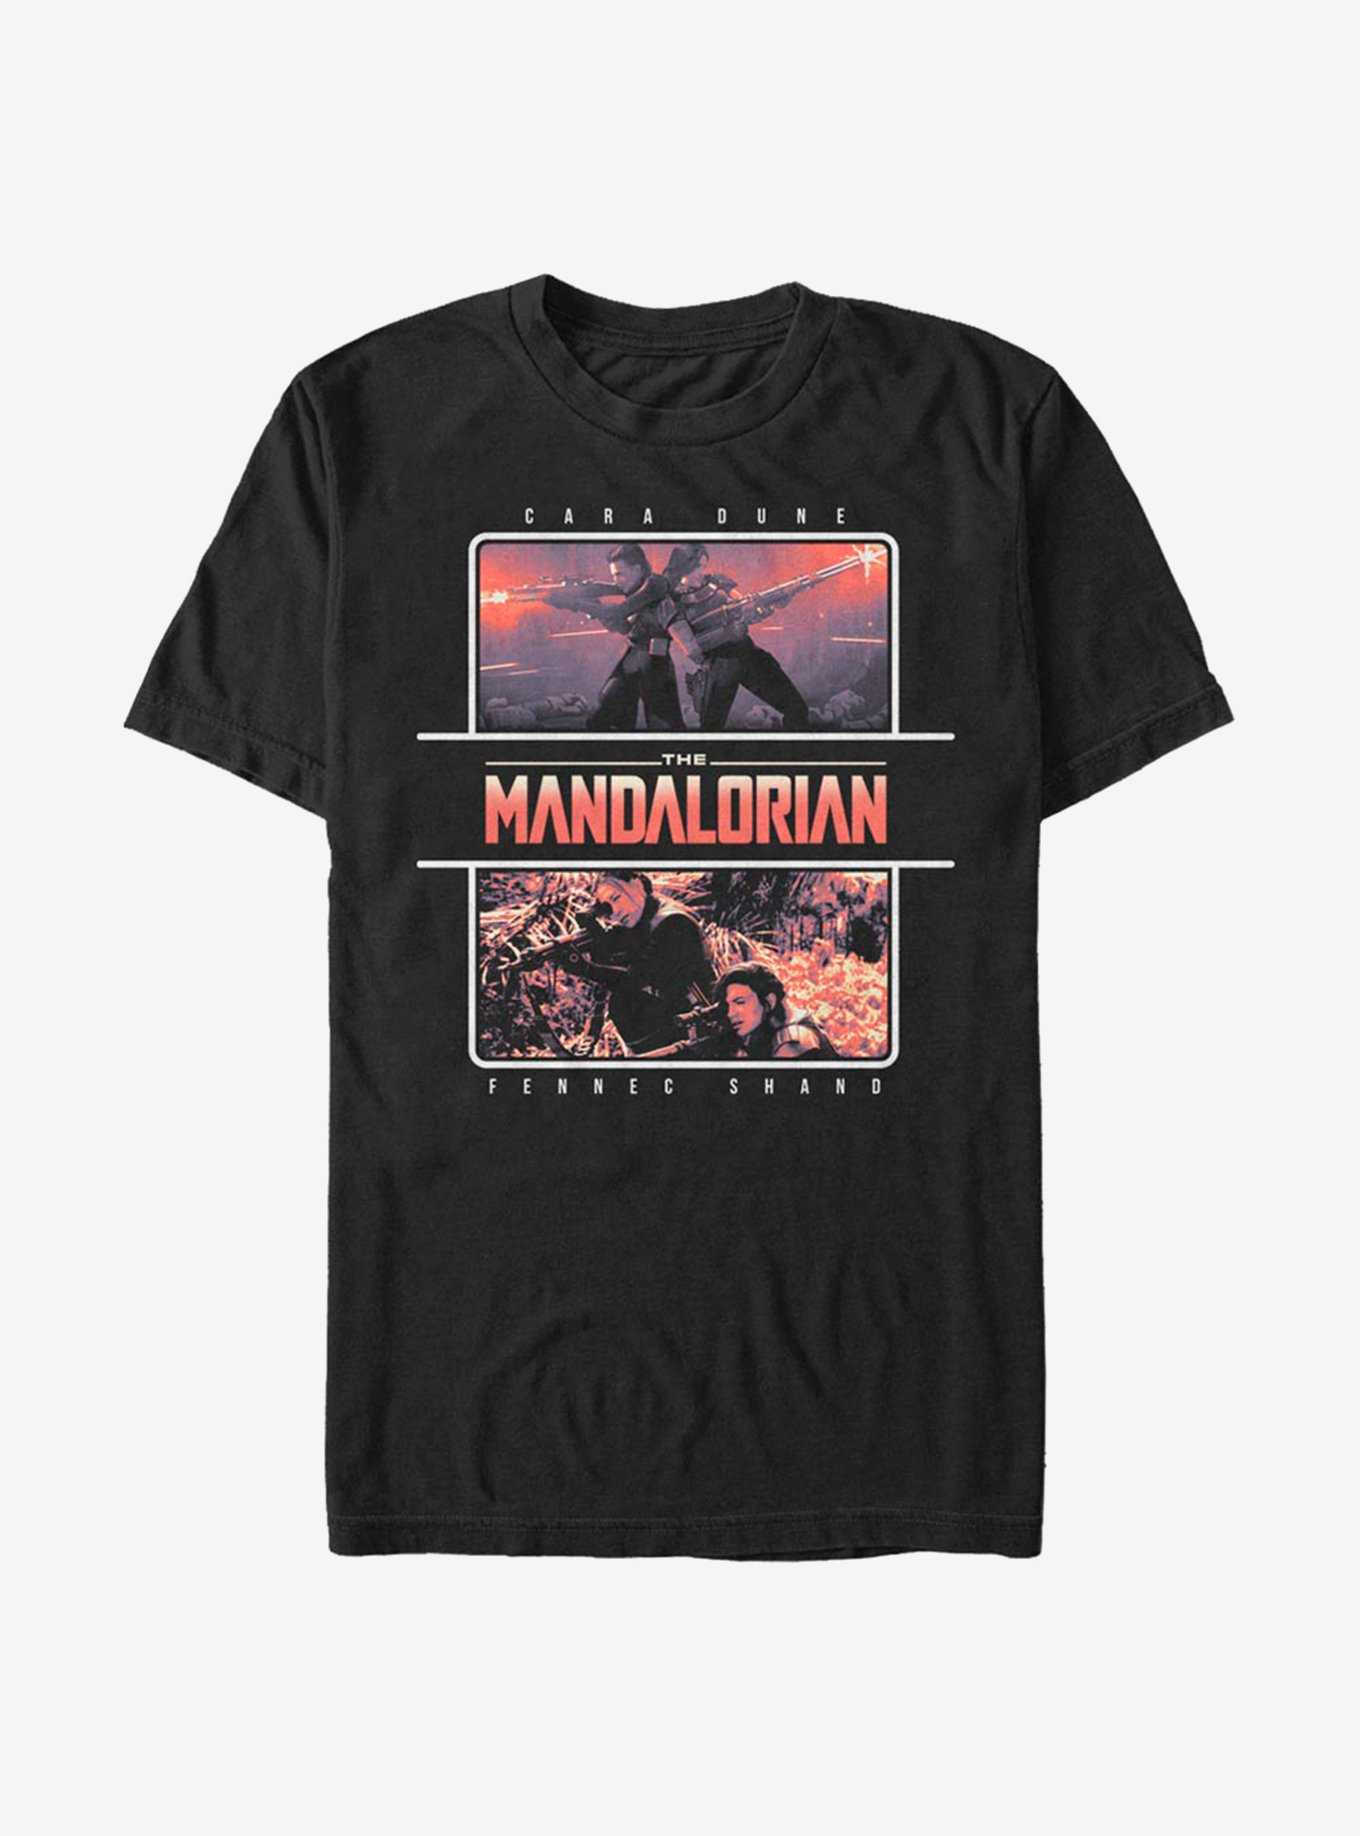 Star Wars The Mandalorian Season 2 Dune Shand Team T-Shirt, , hi-res